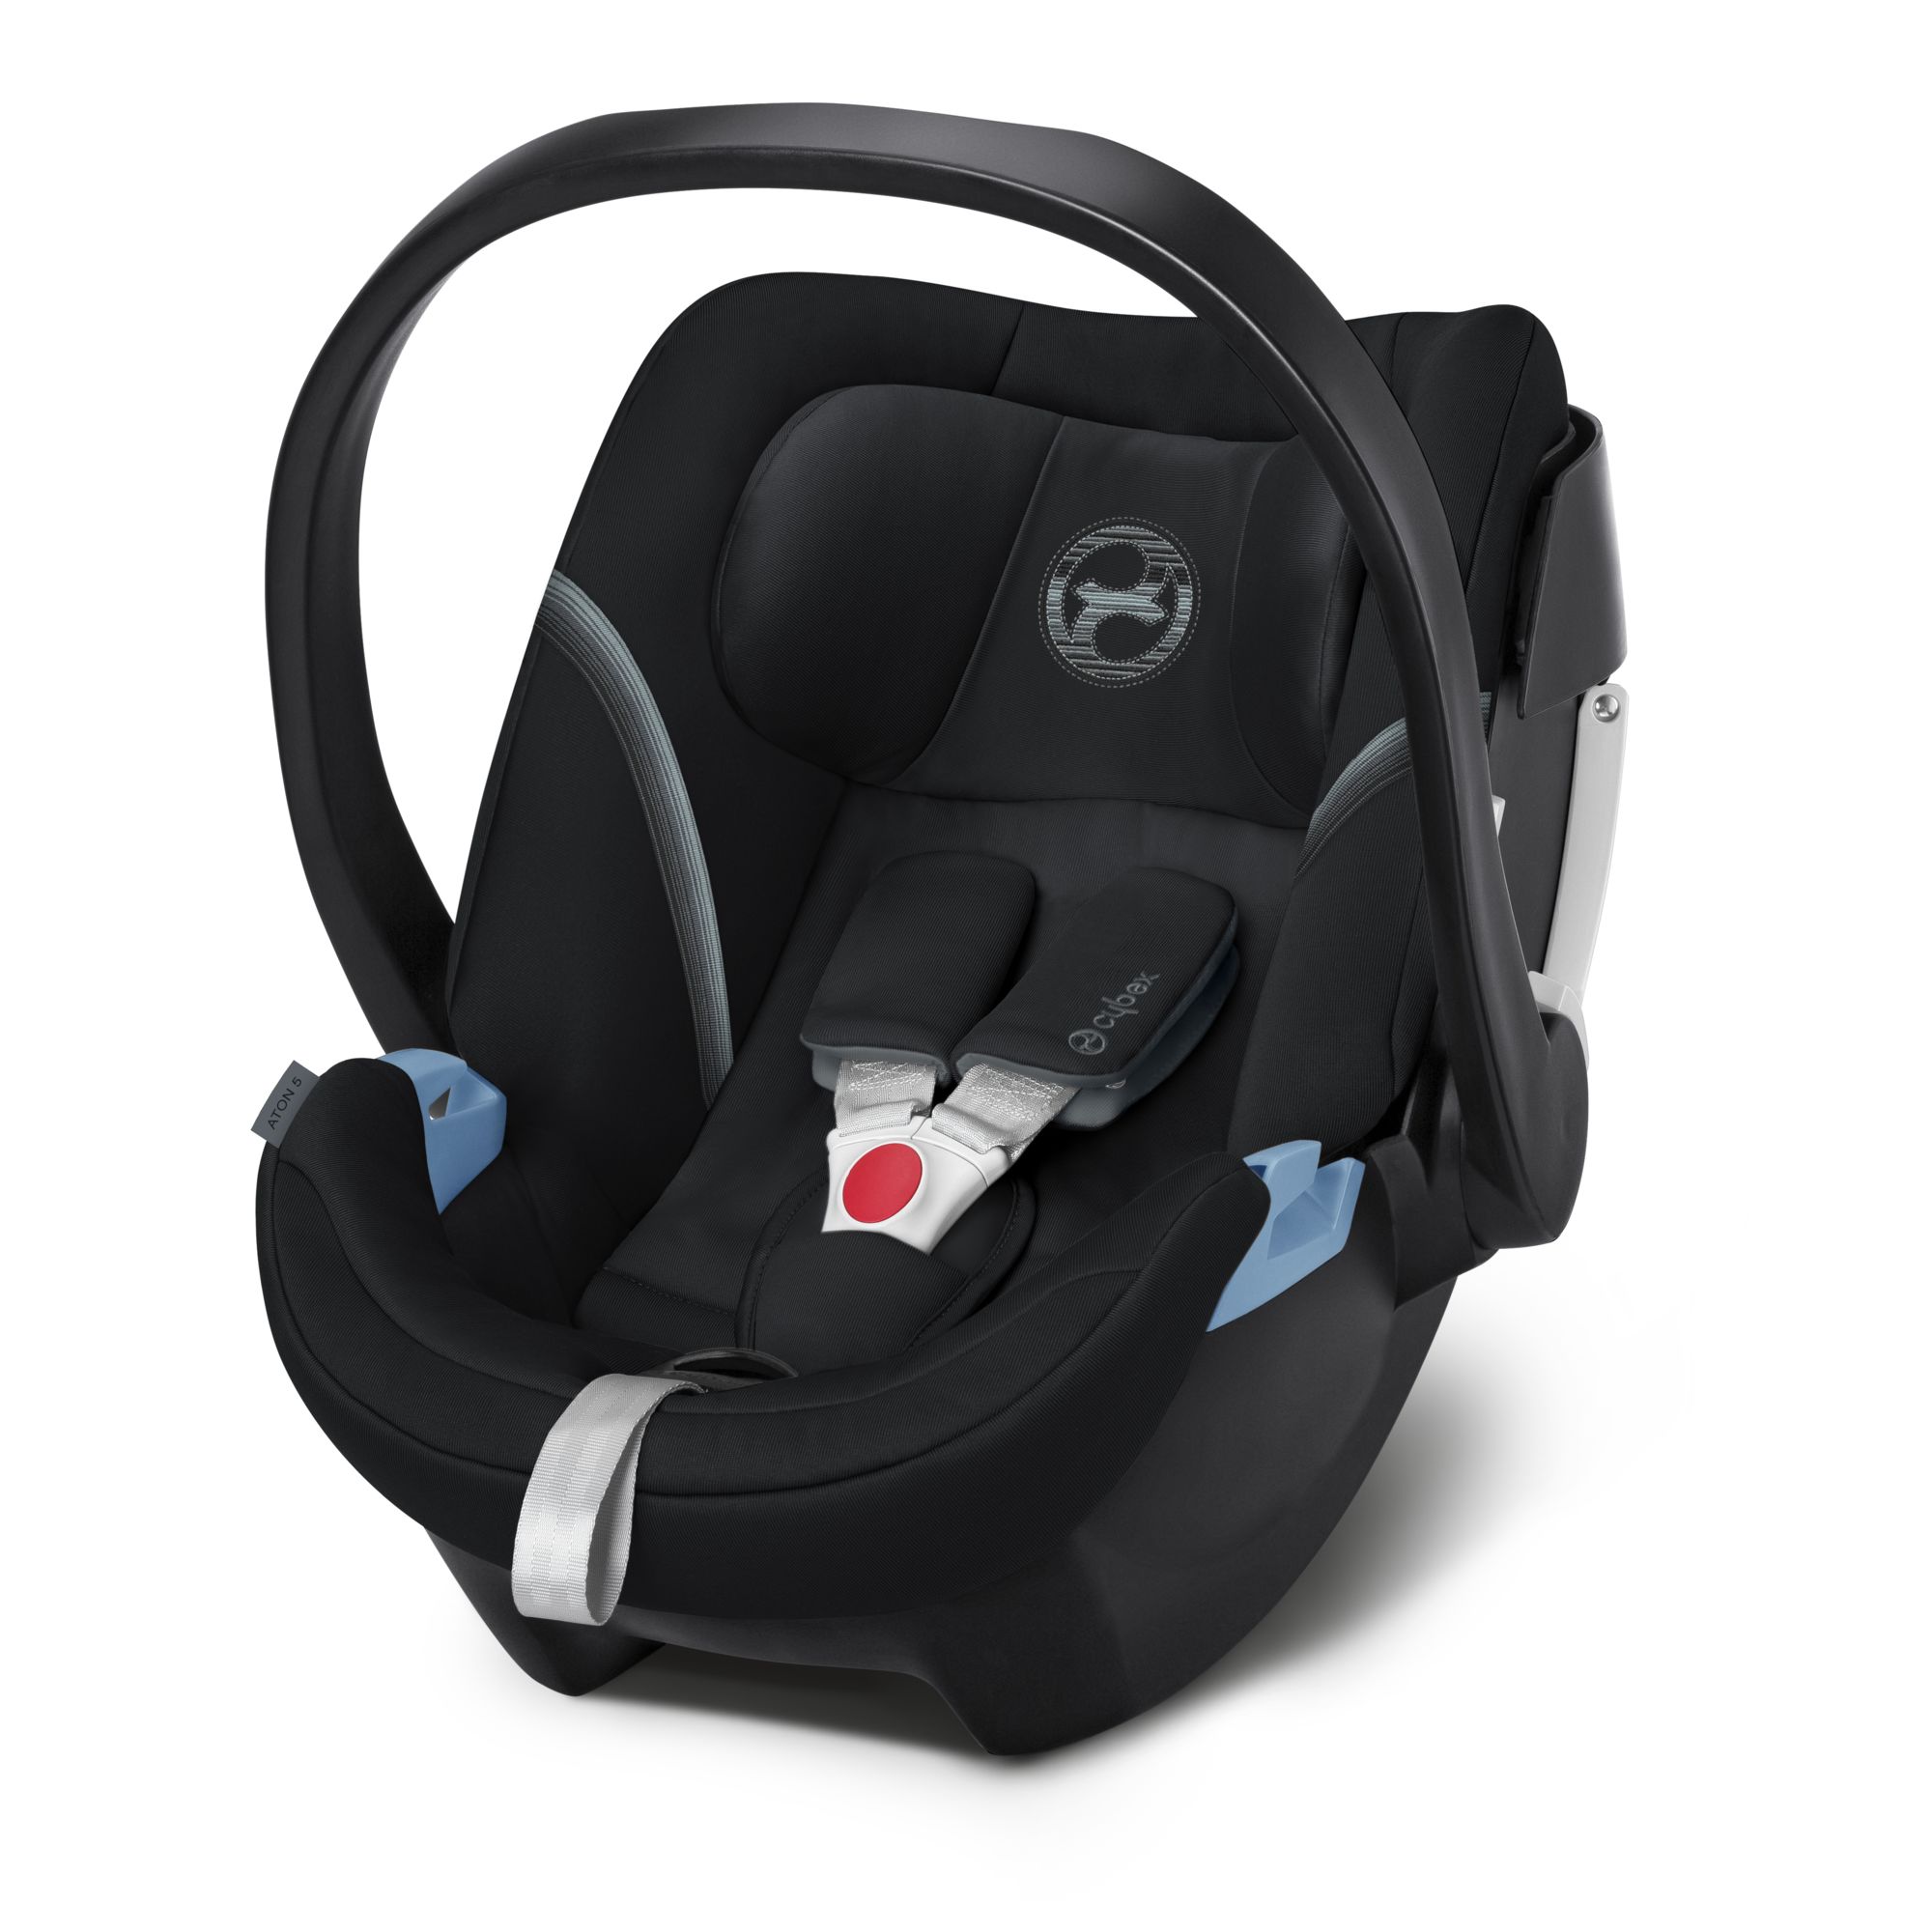 Sillas de auto galardonadas de CYBEX: solo lo mejor para tu bebé